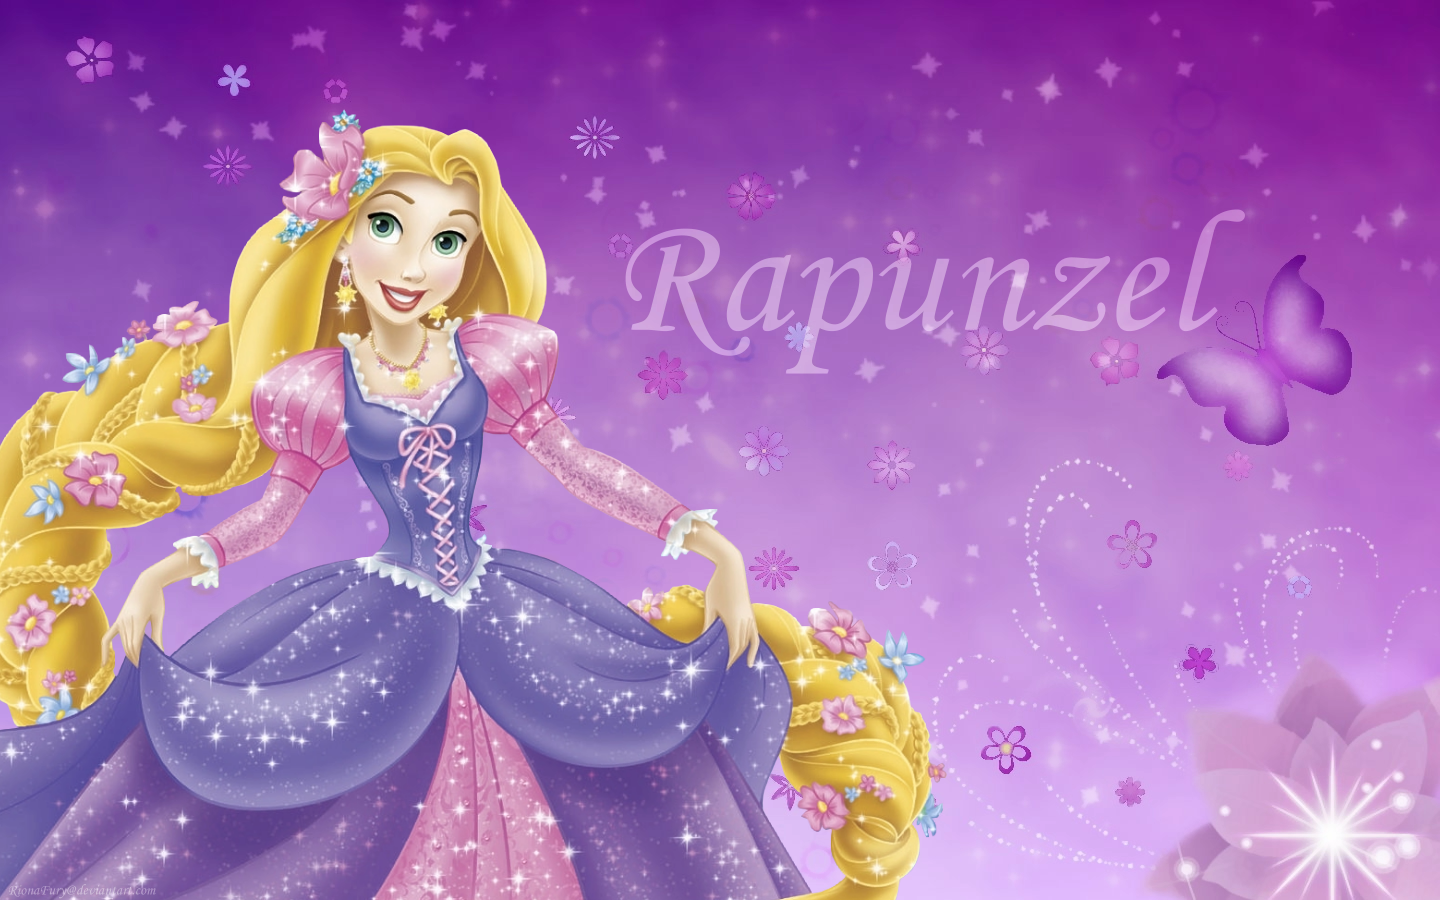 Tangled images Disney Princess Rapunzel wallpaper photos 23744594